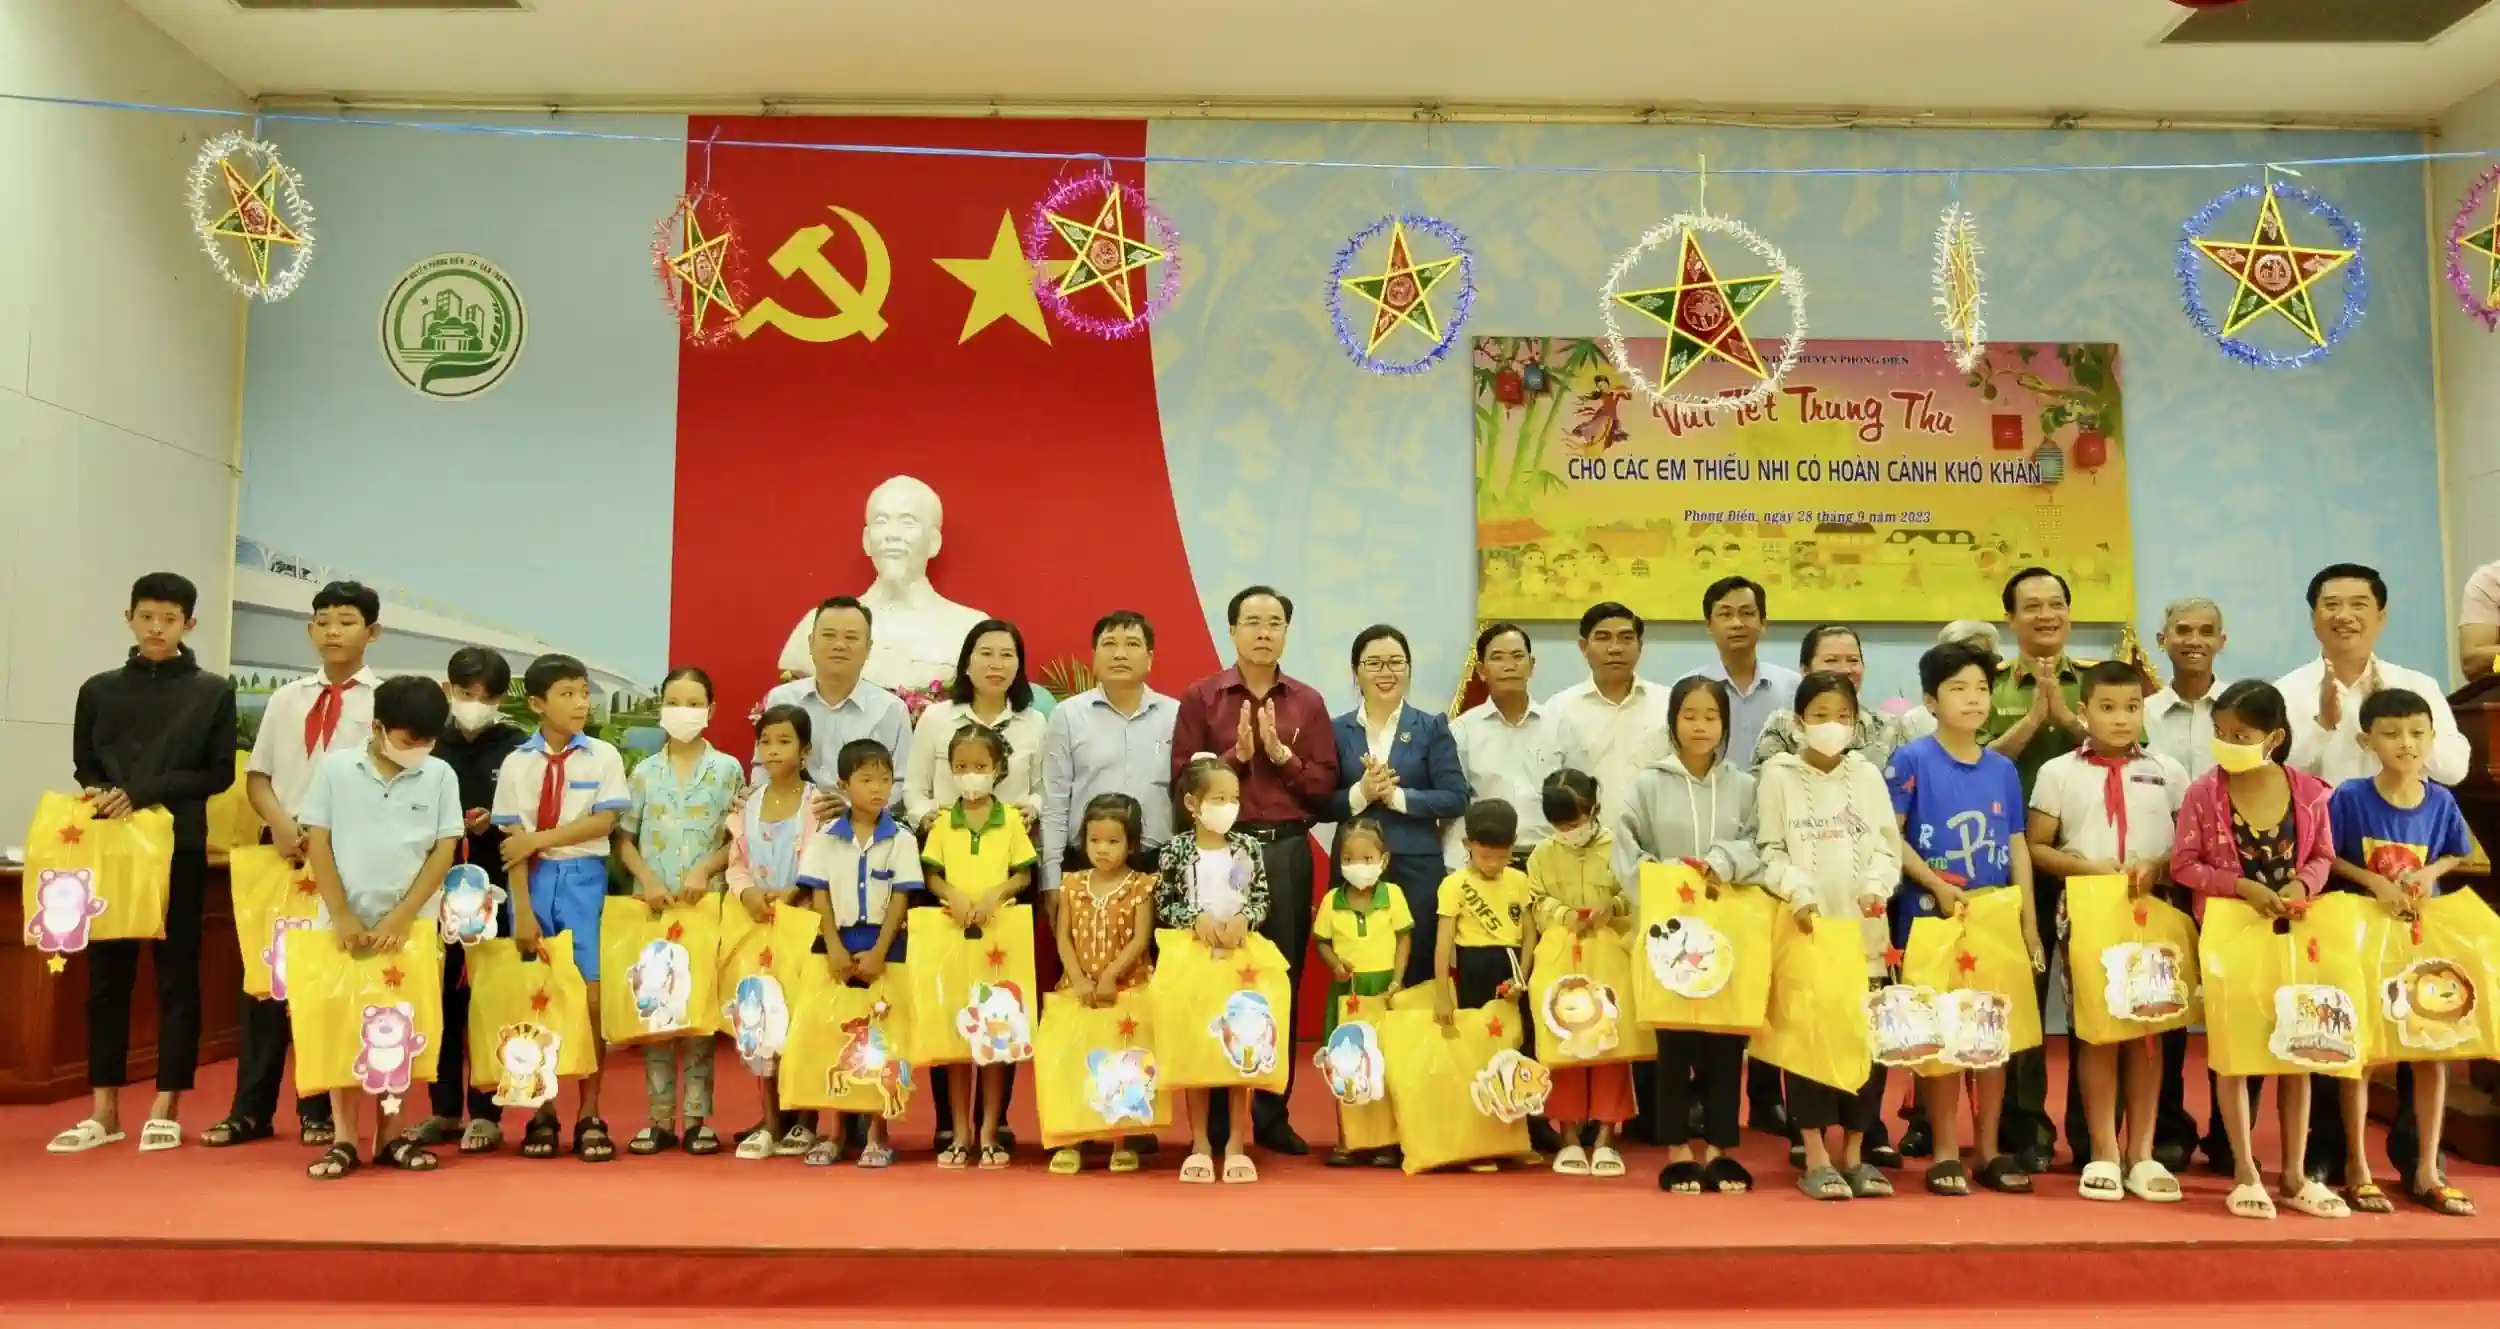 Chương trình “Vui Tết Trung thu cho các em thiếu nhi có hoàn cảnh khó khăn” tại huyện Phong Điền. Ảnh: CTV